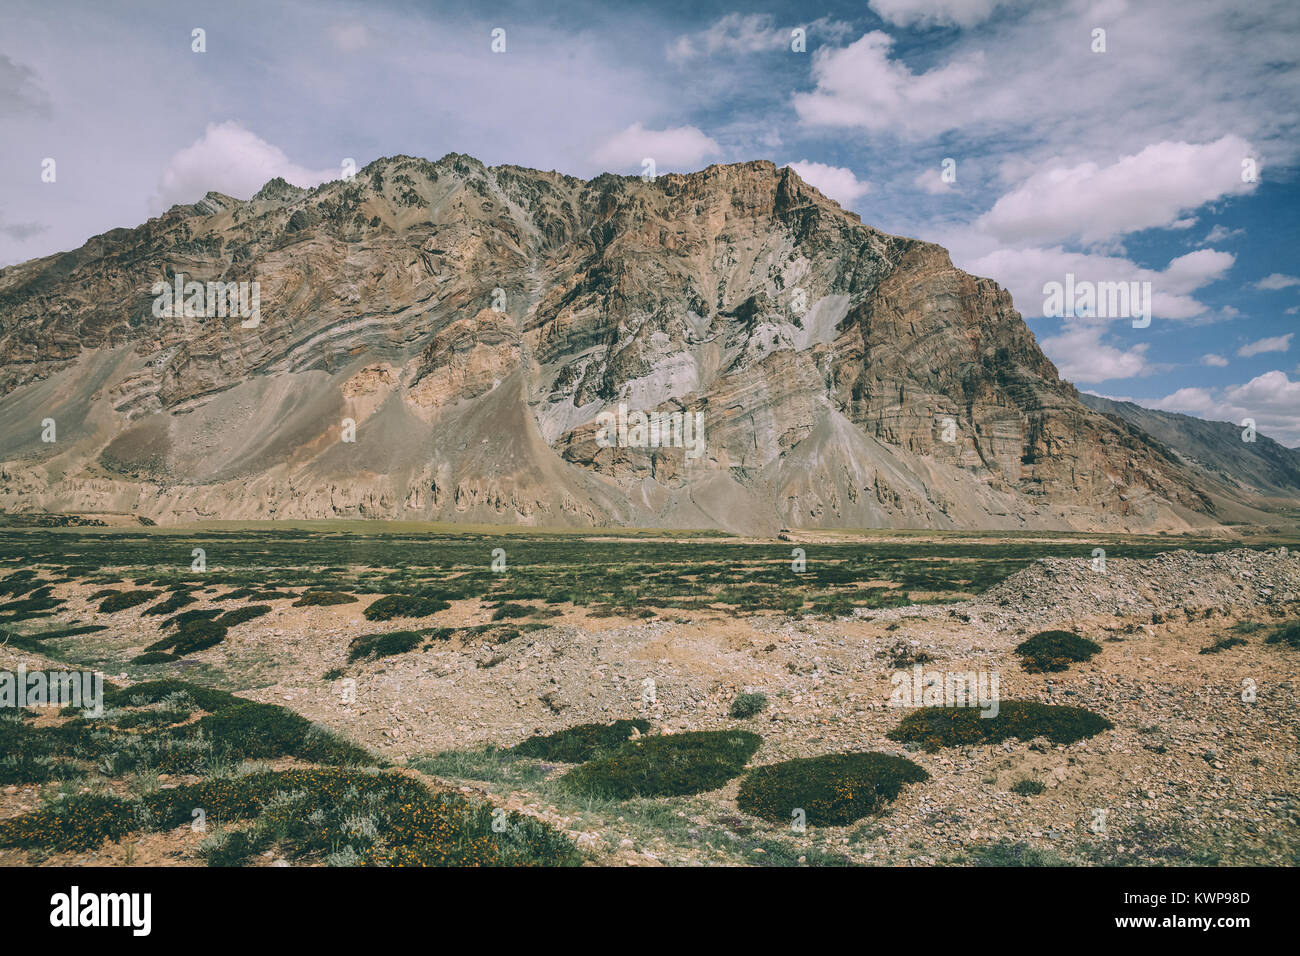 Énorme rocher et vallée de montagne dans la région du Ladakh, Himalaya Indien Banque D'Images